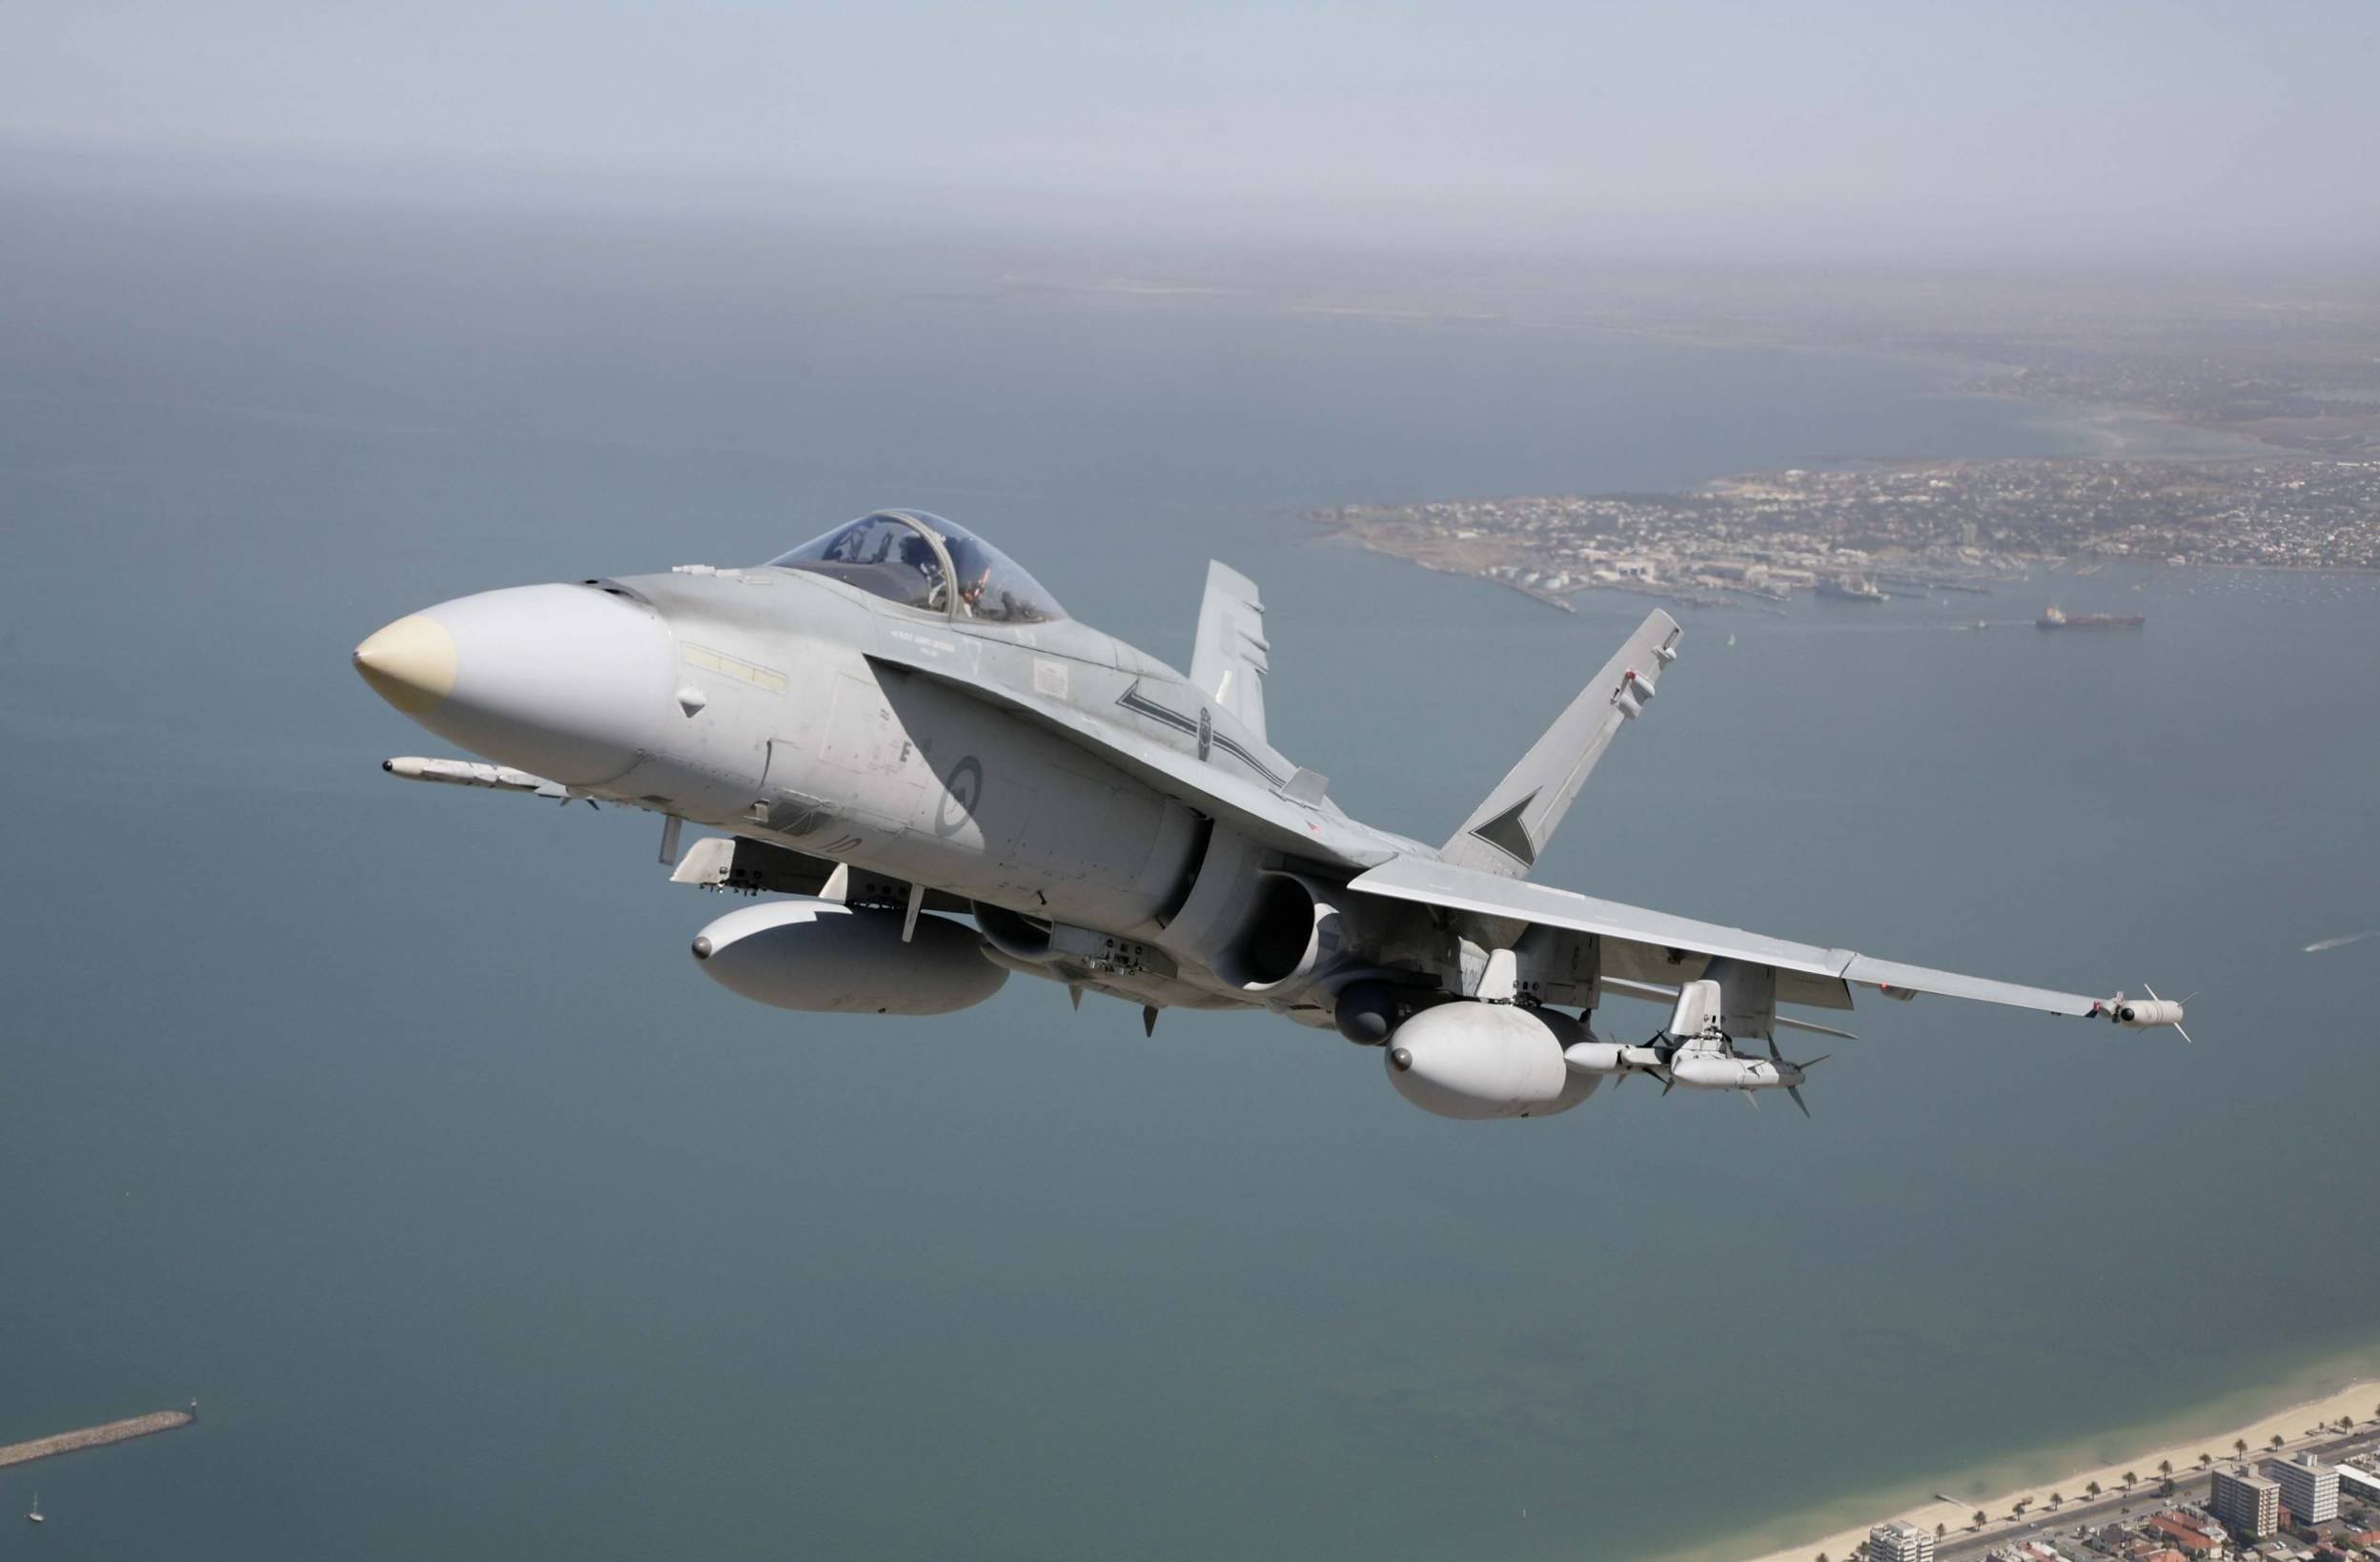 самолет, военный, военно-морской флот, транспортные средства, F- 18 Hornet, реактивный самолет, истребители - обои на рабочий стол